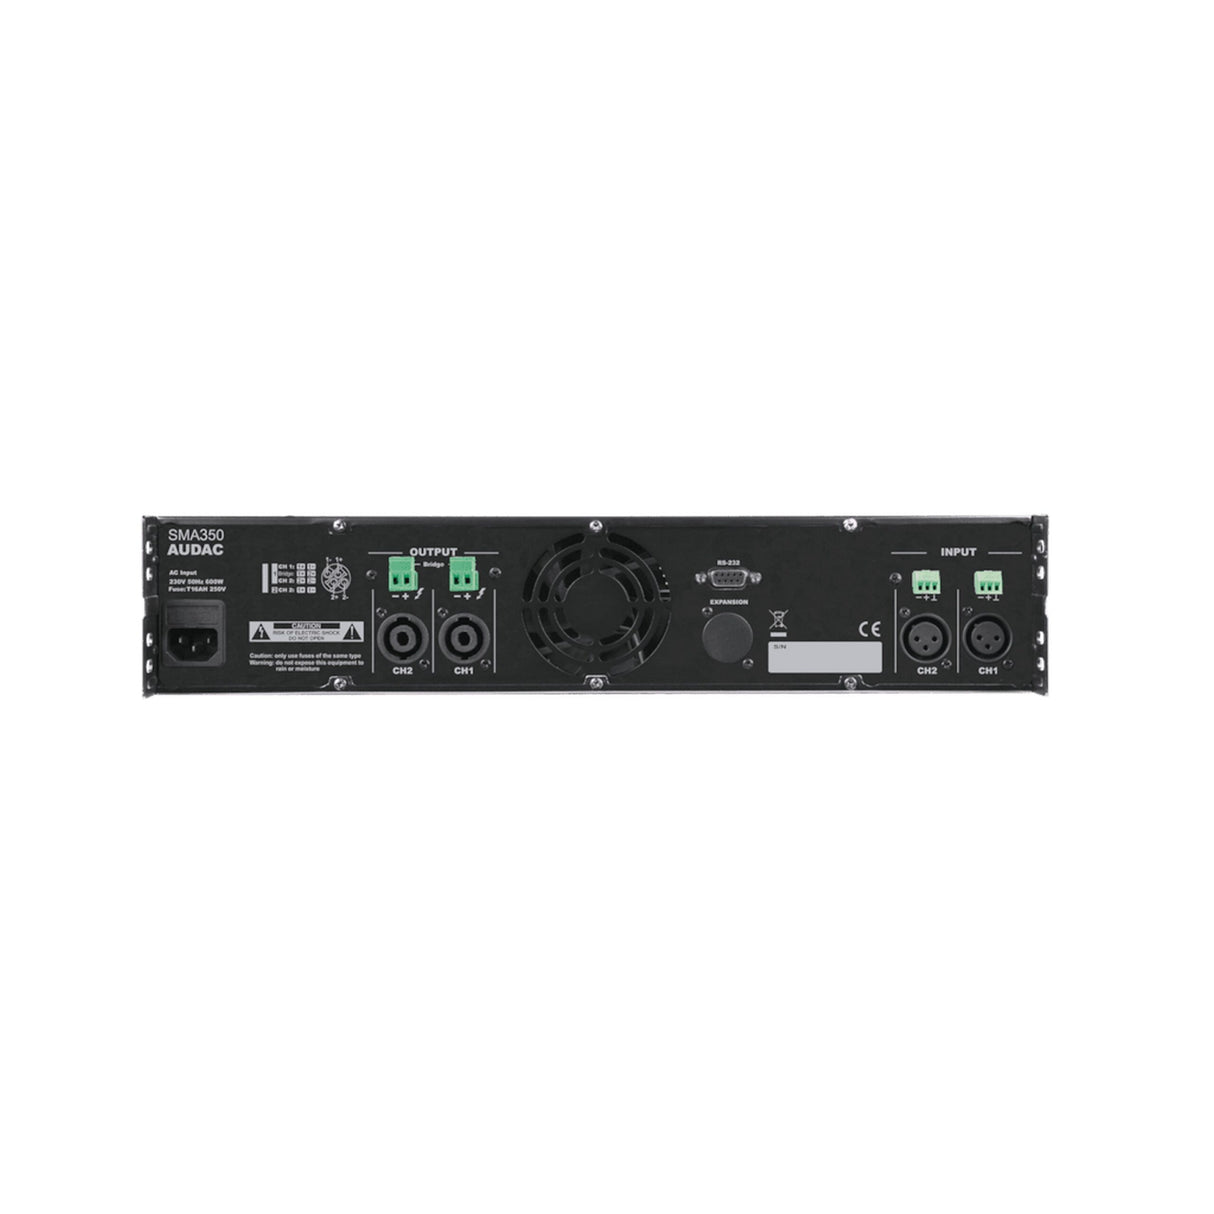 Audac SMA350 WaveDynamics Dual-Channel Power Amplifier 2 x 350W